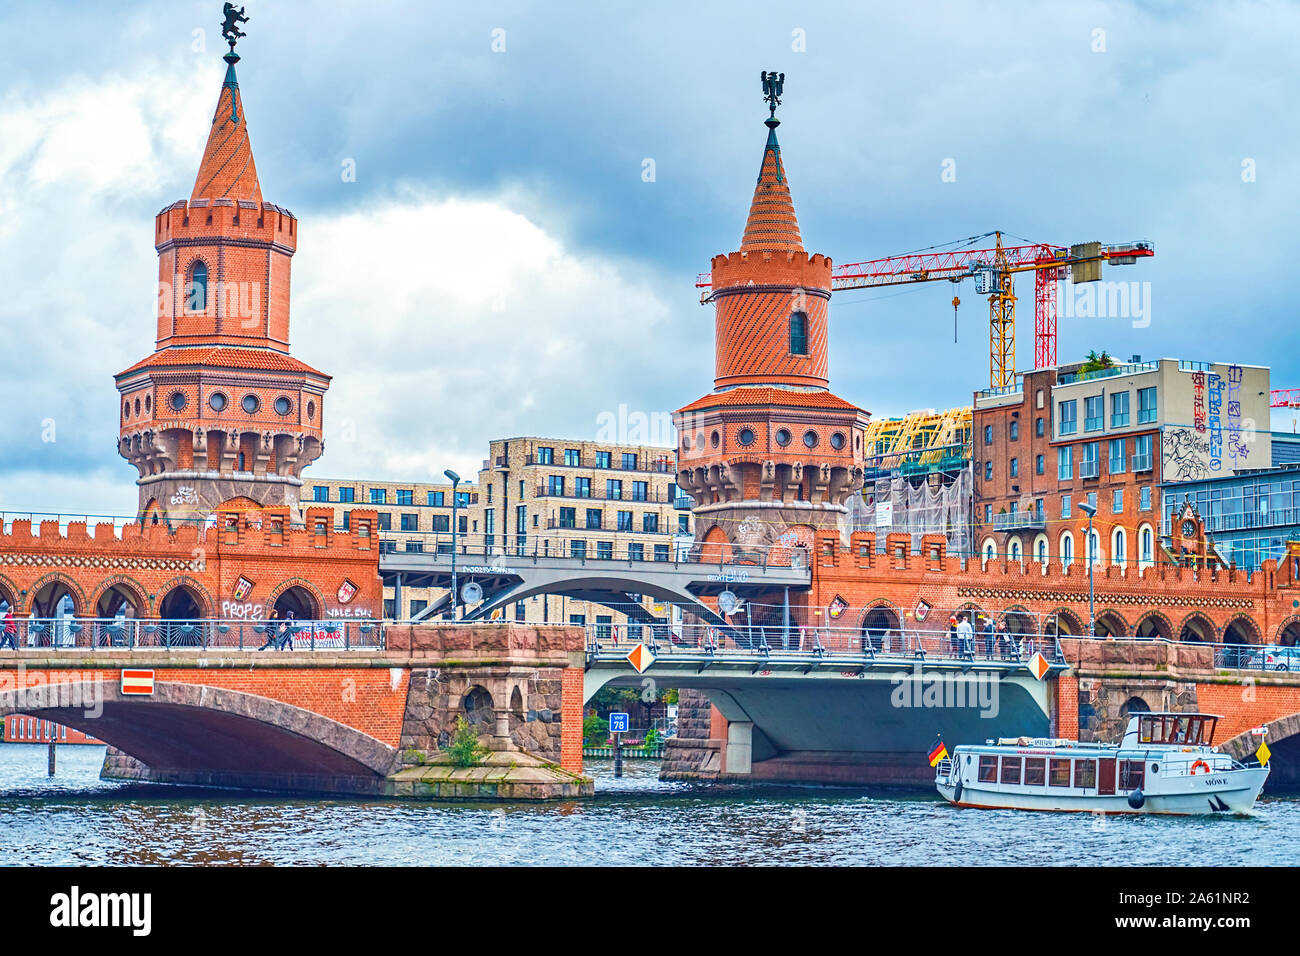 BERLIN, ALLEMAGNE - le 3 octobre 2019 : Le beau pont Oberbaum historique avec deux tours à travers la rivière Spree, le 3 octobre à Berlin Banque D'Images